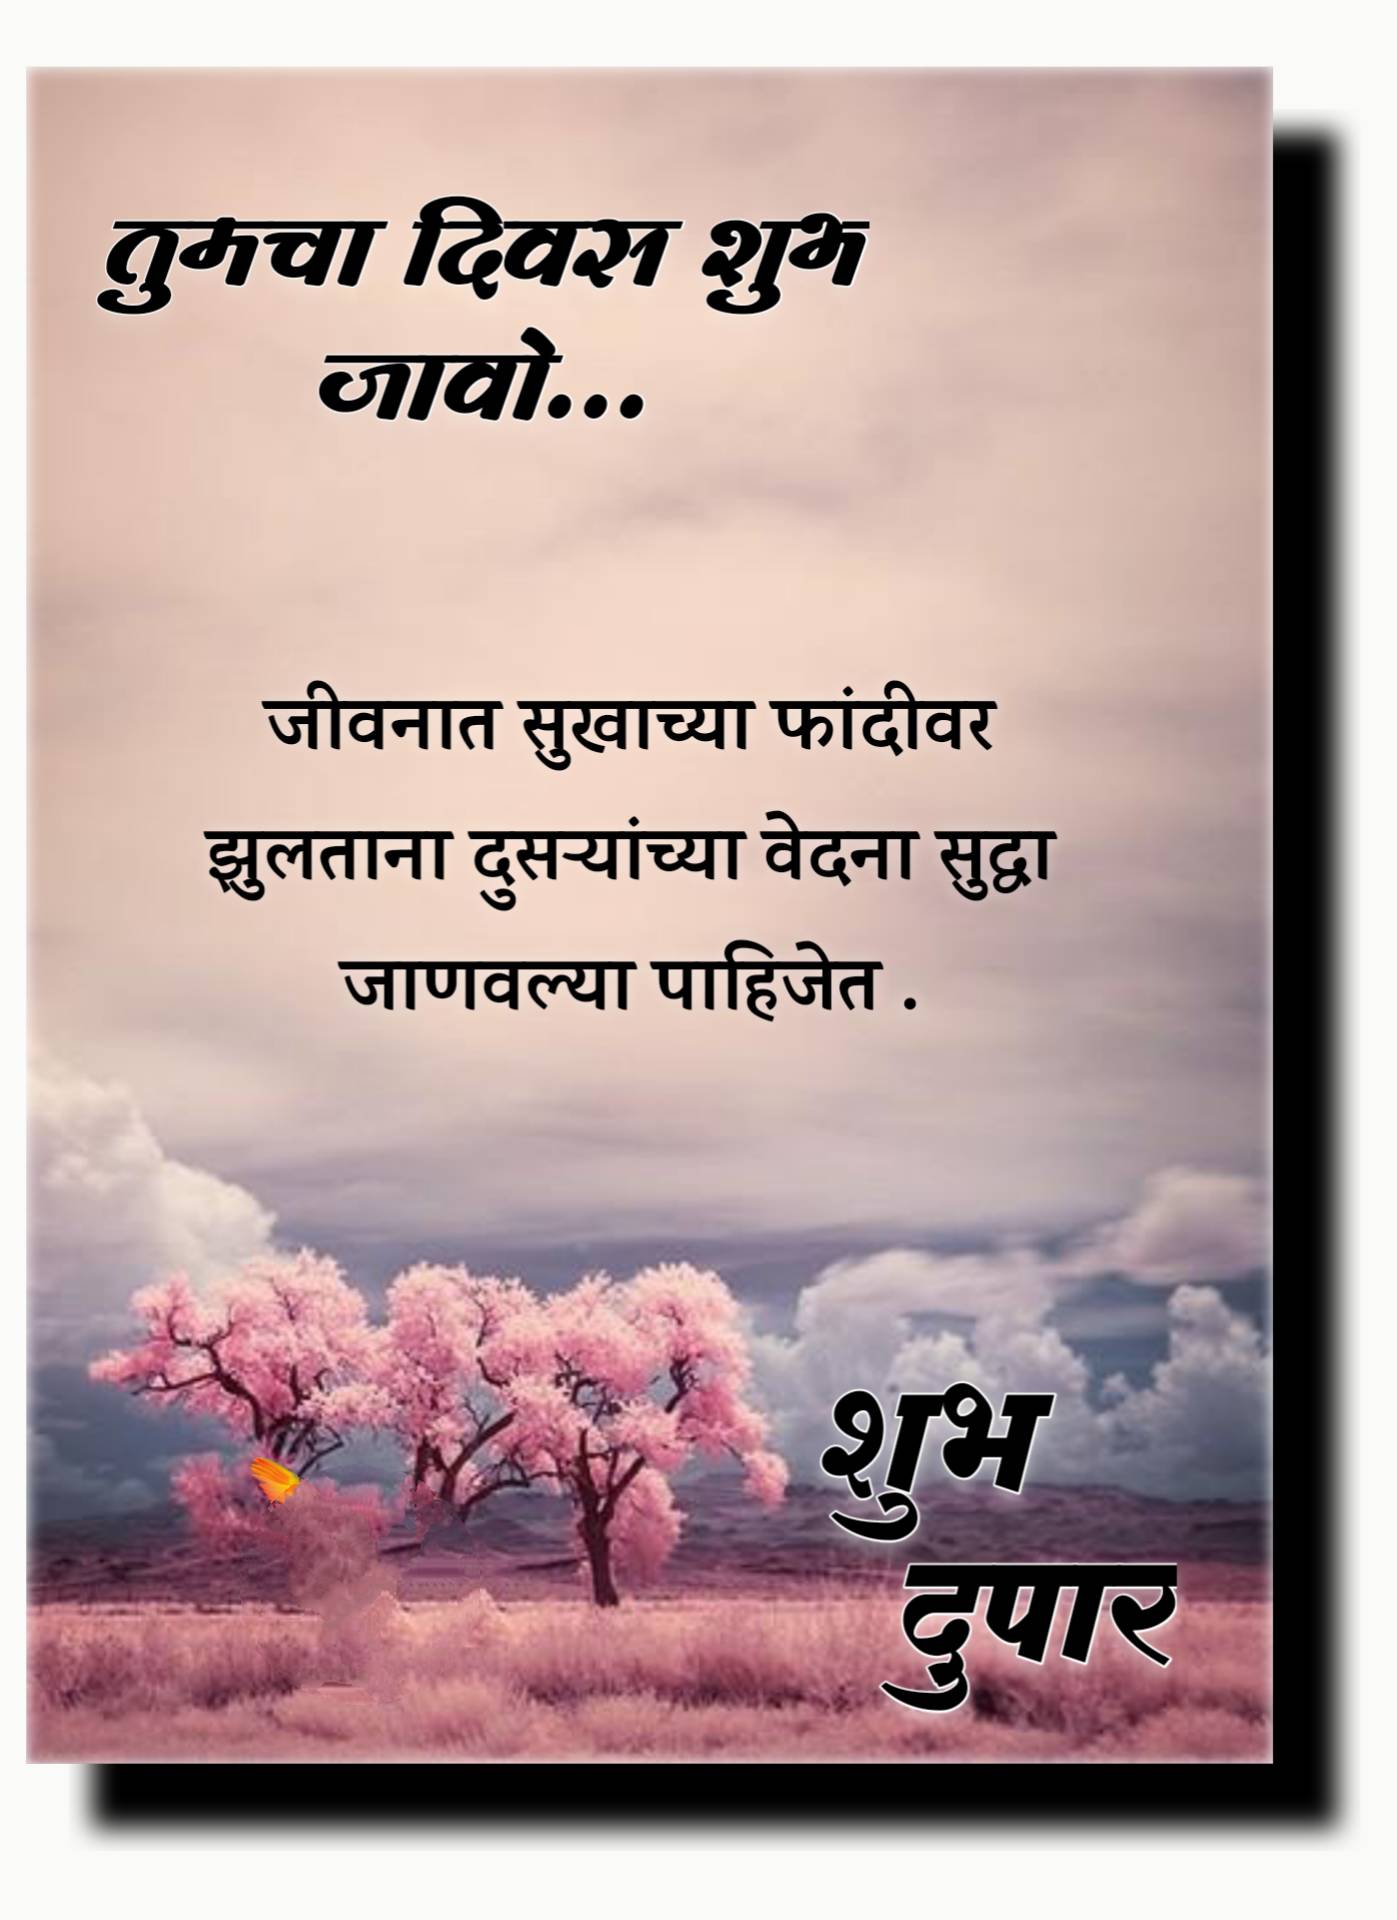 Shubh Dupar Marathi Message